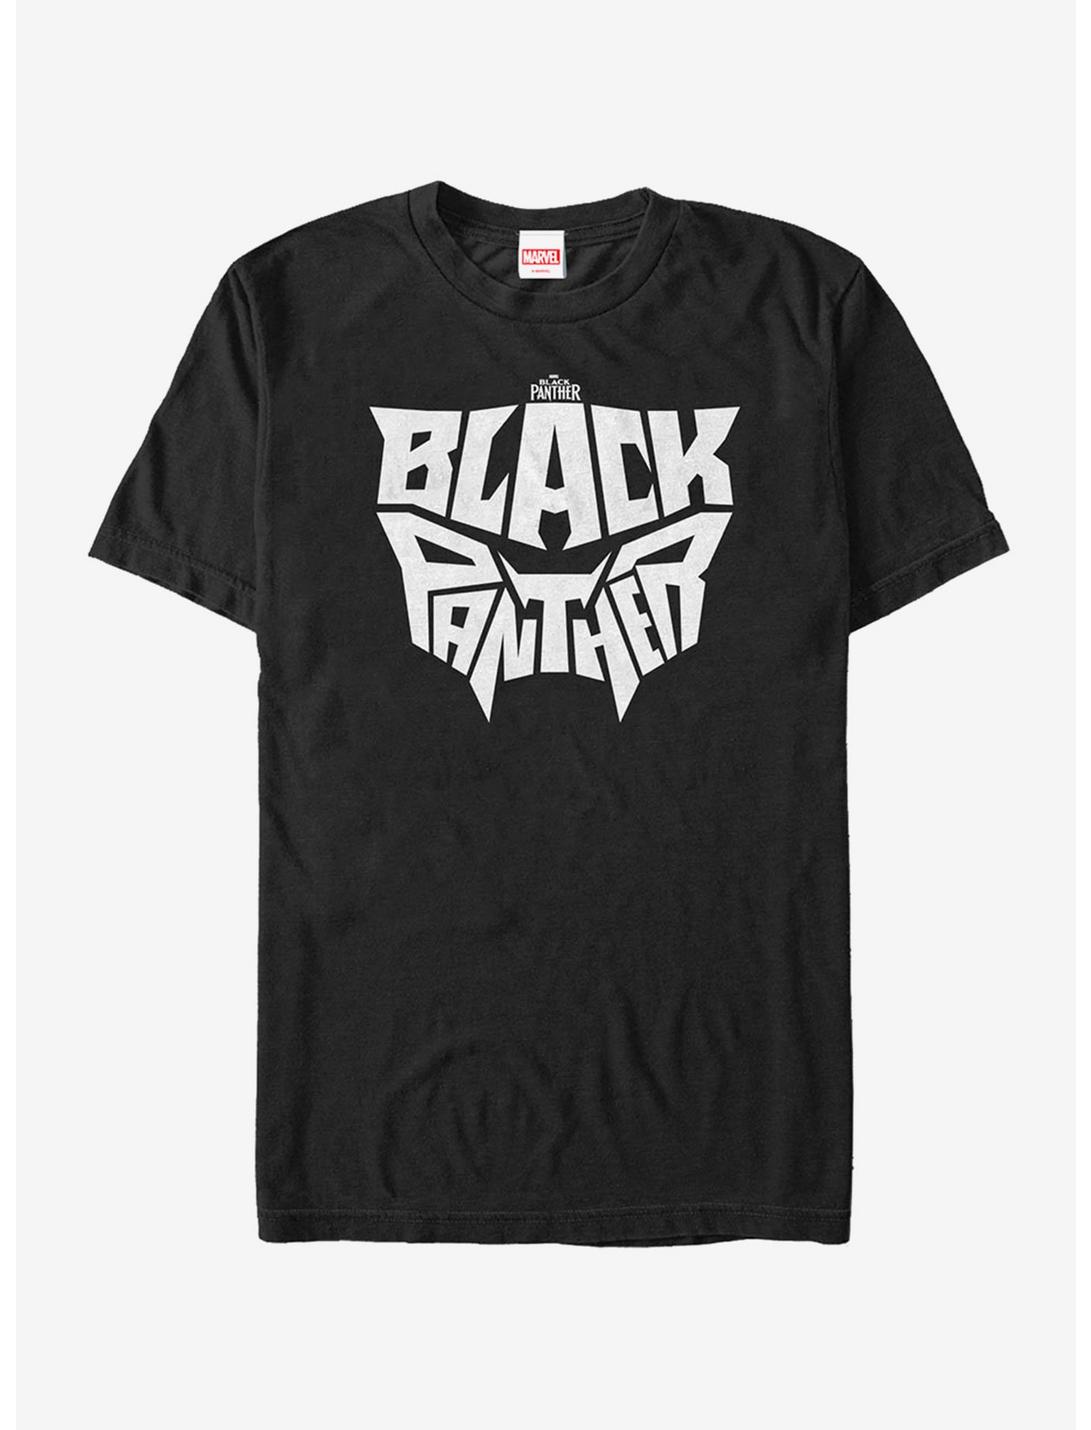 Marvel Black Panther 2018 Light Hidden Mask T-Shirt, BLACK, hi-res